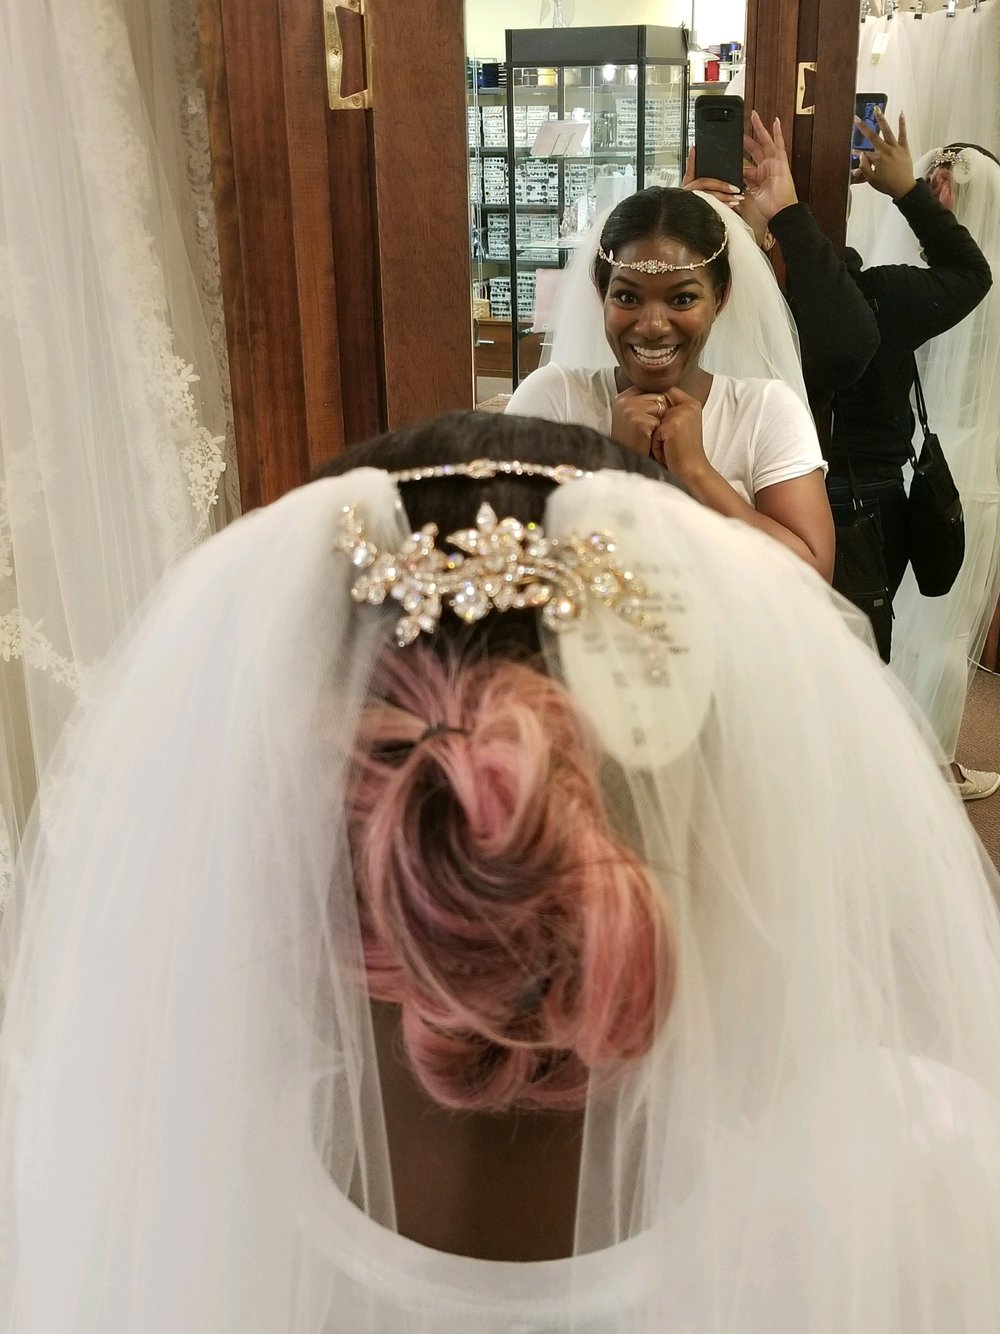 Black Destination Bride - BlackDesti Wedding Journal - Bridefriends Podcast -16 Headpiece 2 veils yes 6.JPG